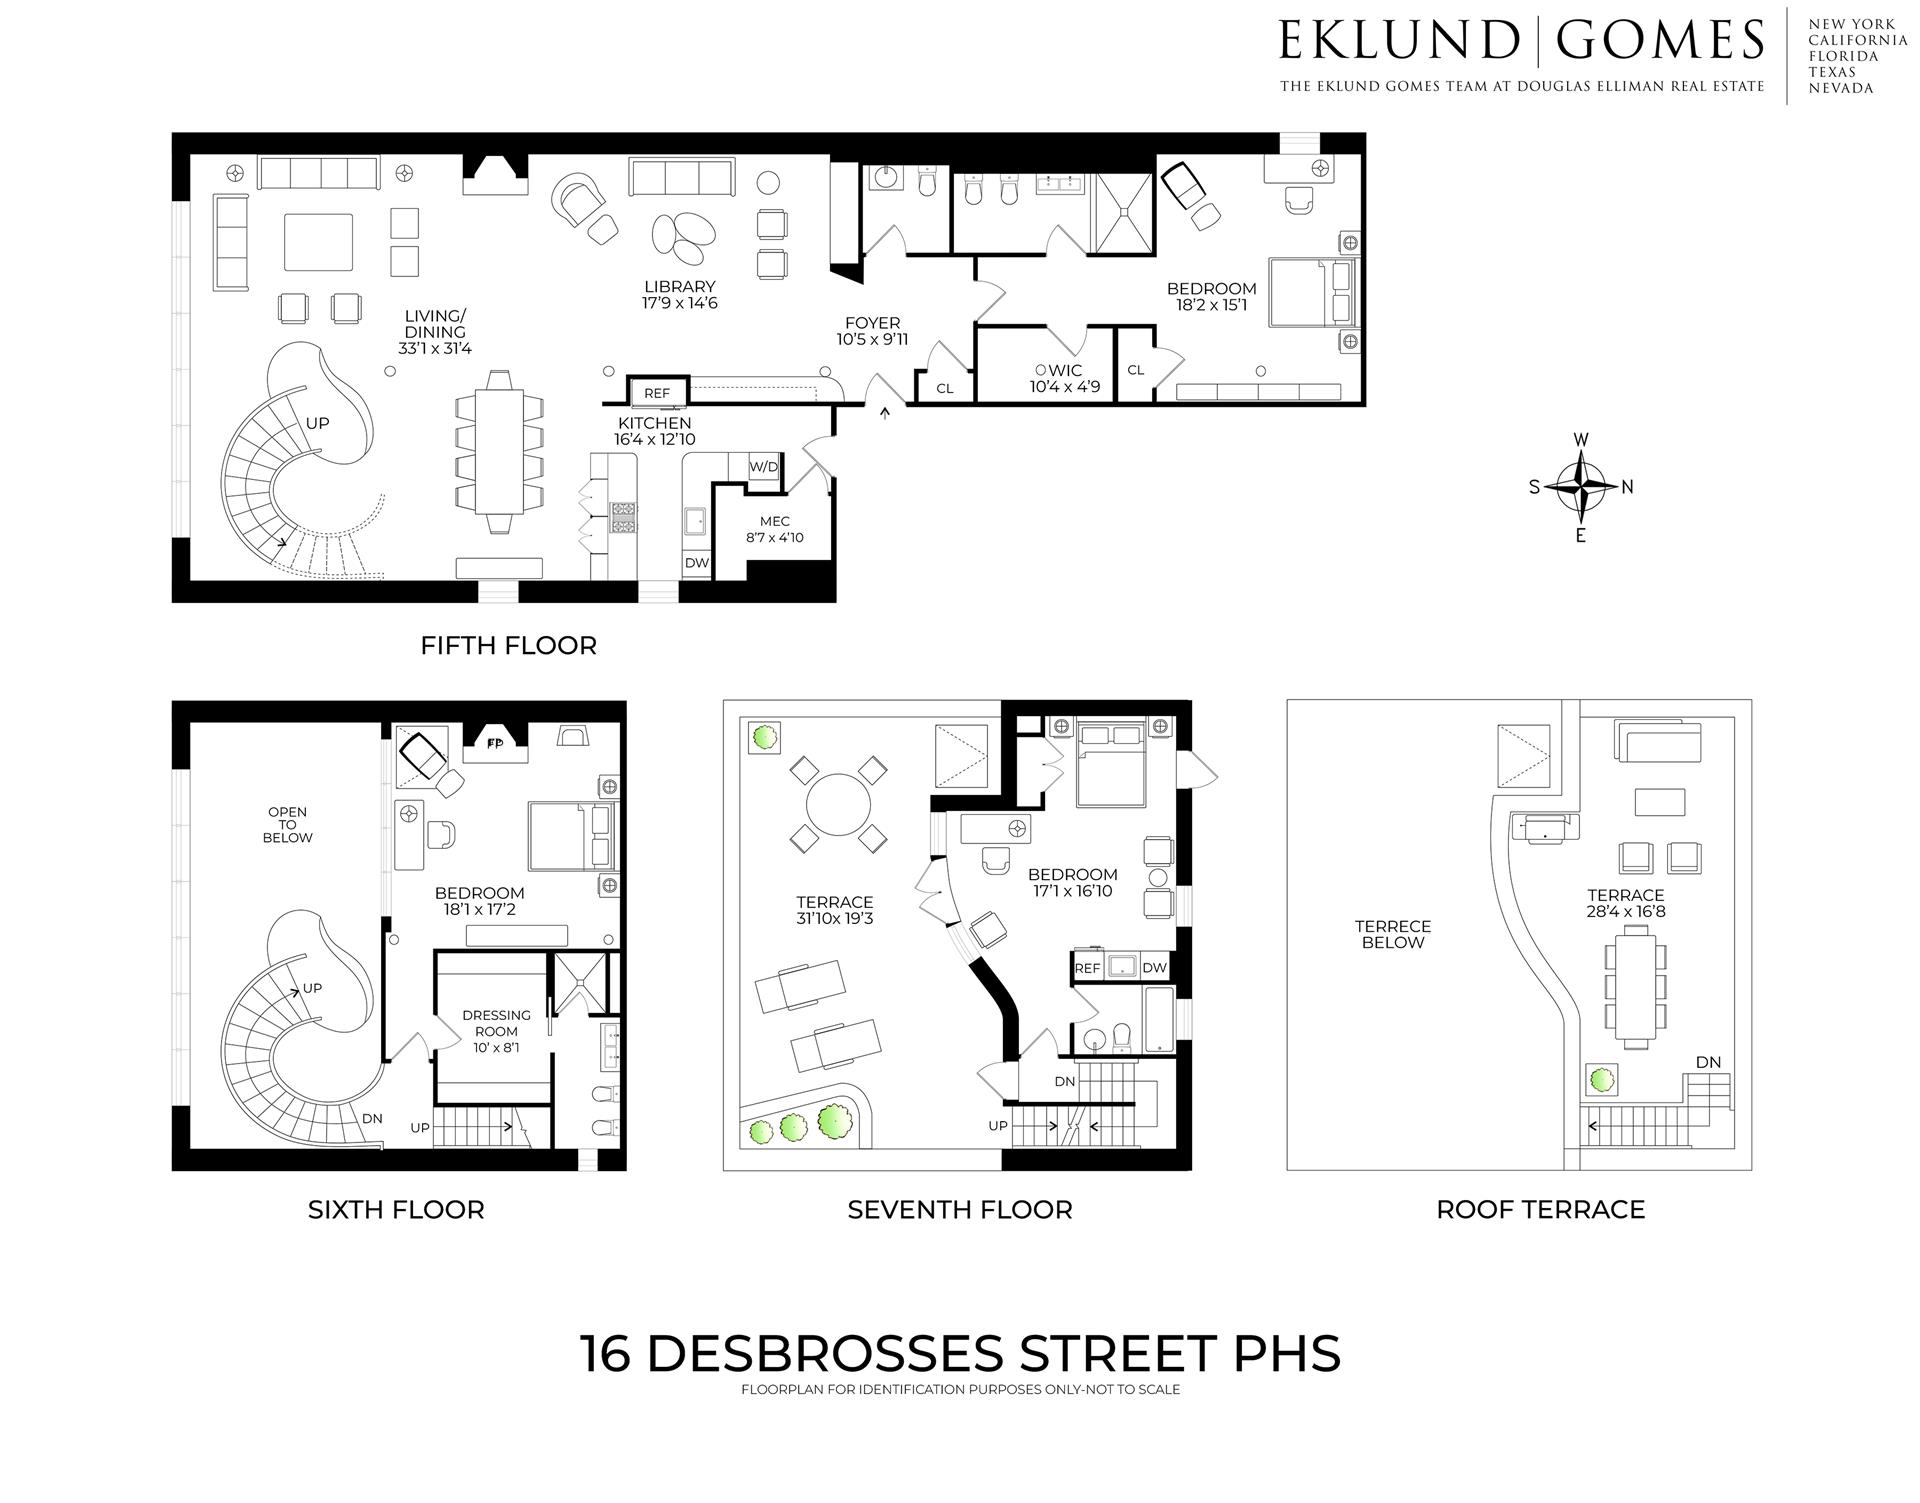 Floorplan for 16 Desbrosses Street, PHS